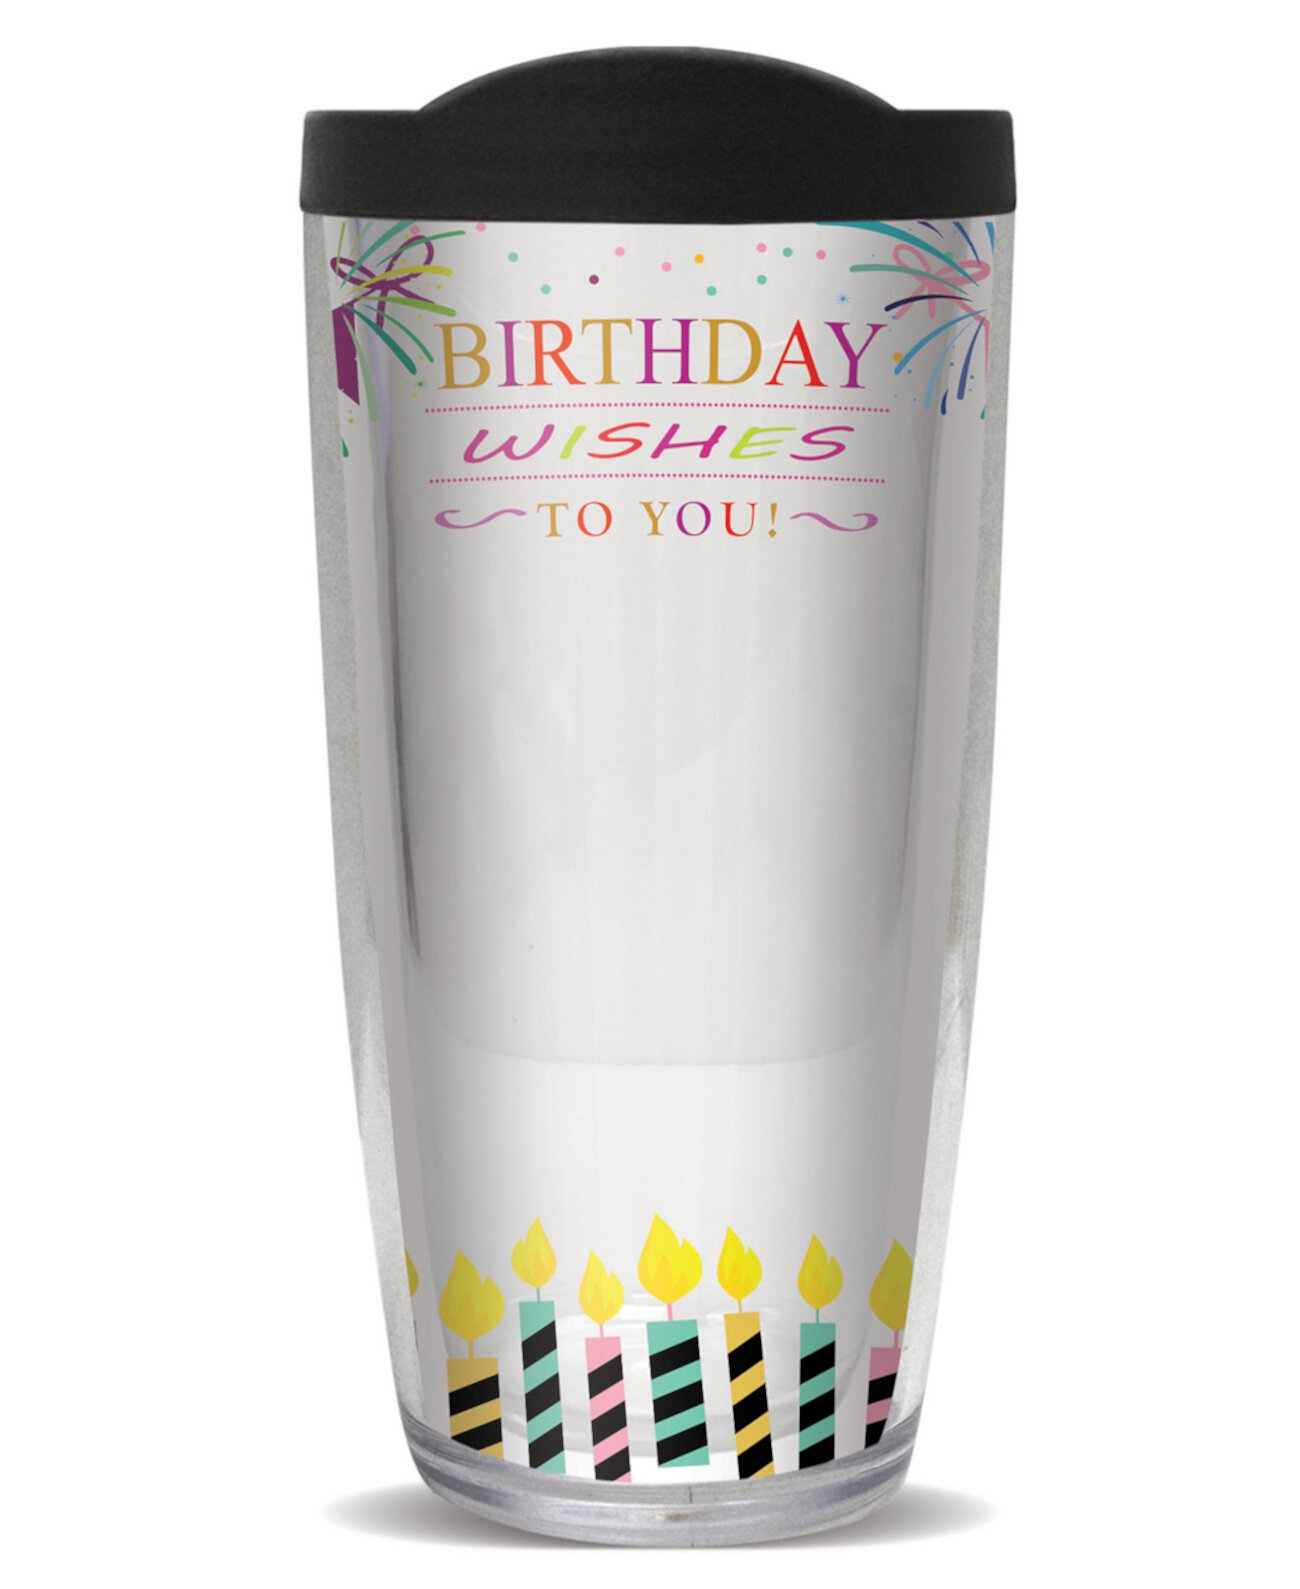 Sign-It День рождения Fem с двойной стенкой изолированный стакан, 16 унций Freeheart